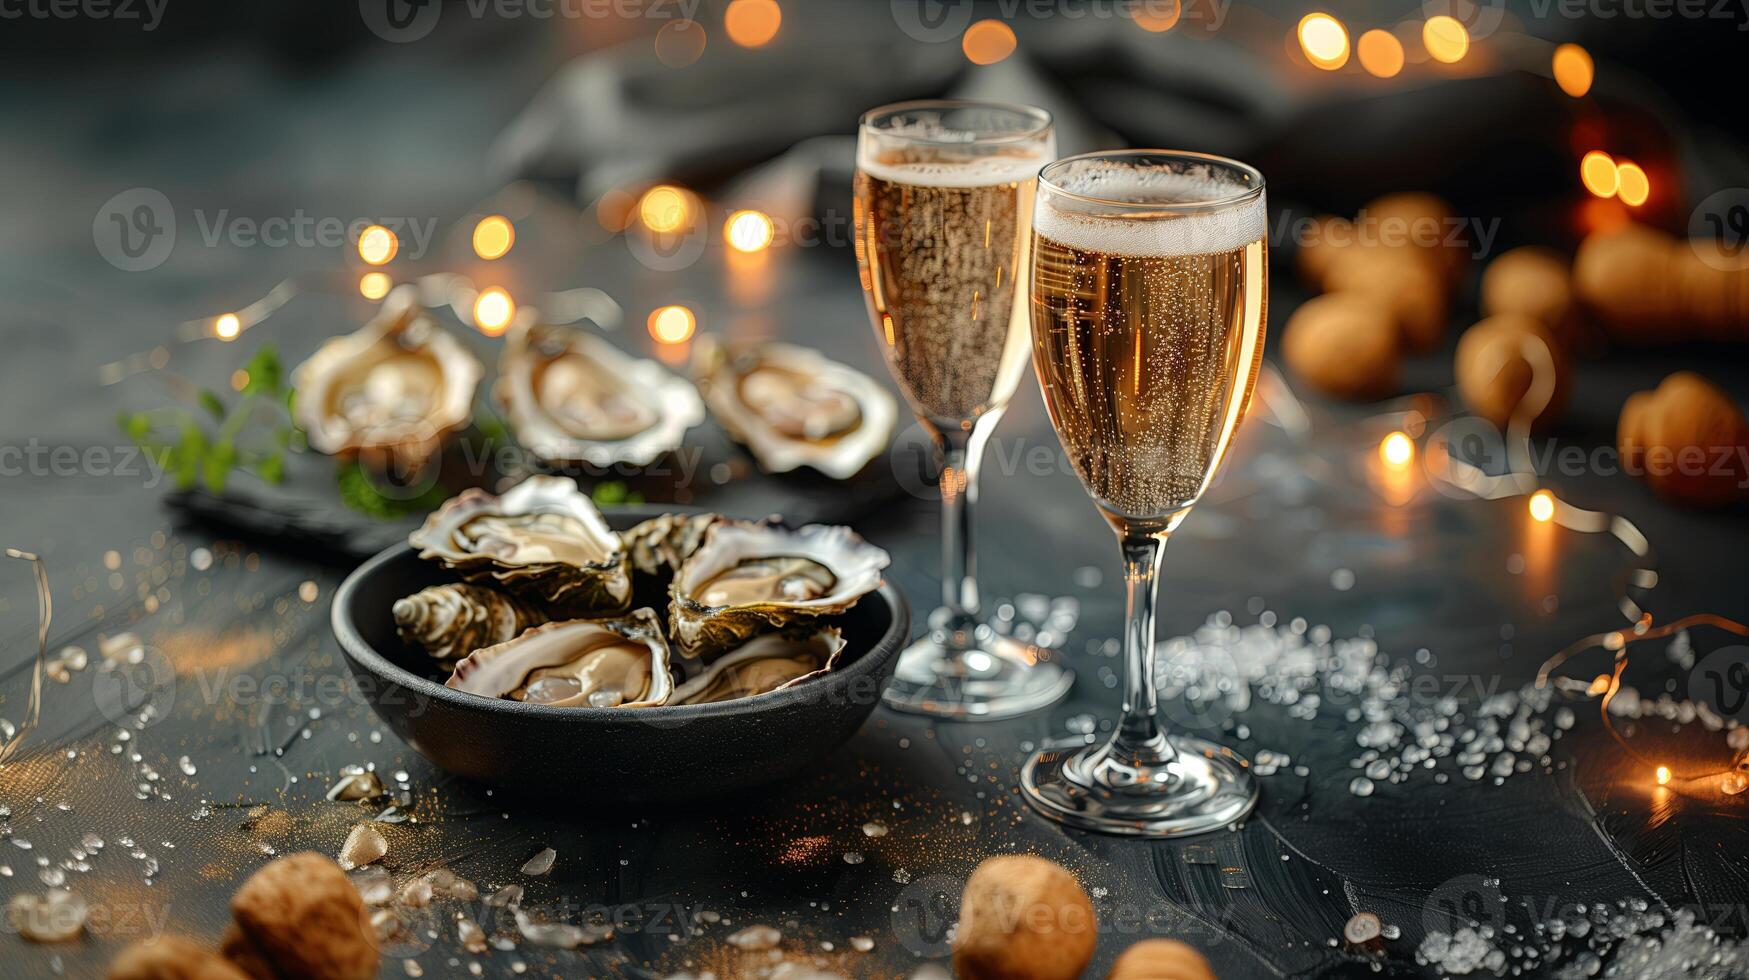 champagne glasögon med gnistrande vin och flaska i en skål nära ostron. hög kvalitet Foto